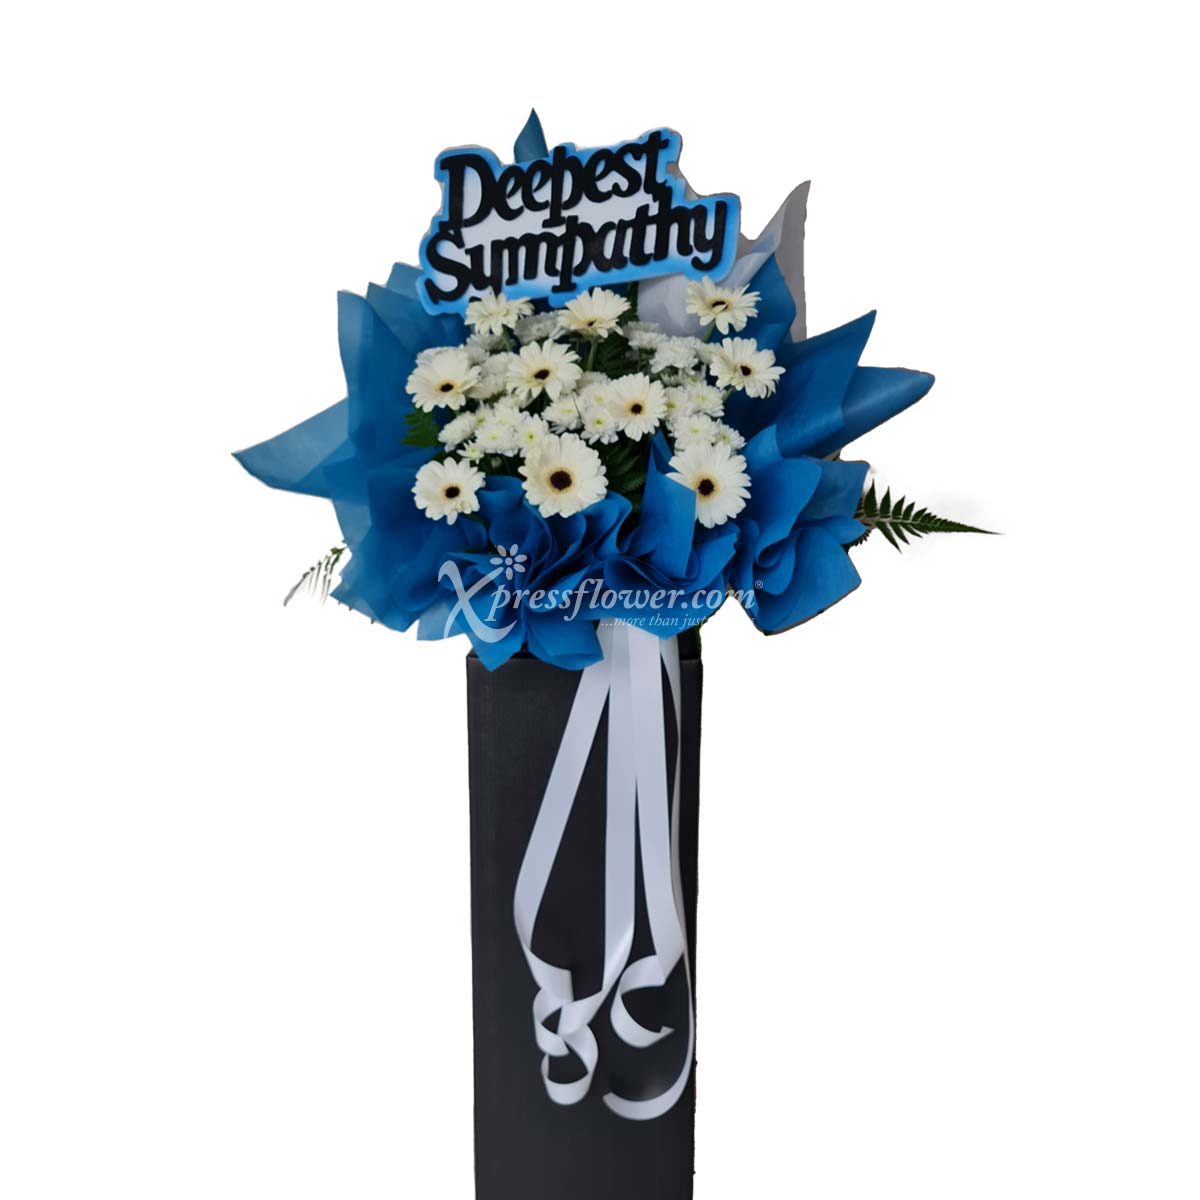 WSC2202 Purest Sympathy Funeral Condolence Flower Wreath B